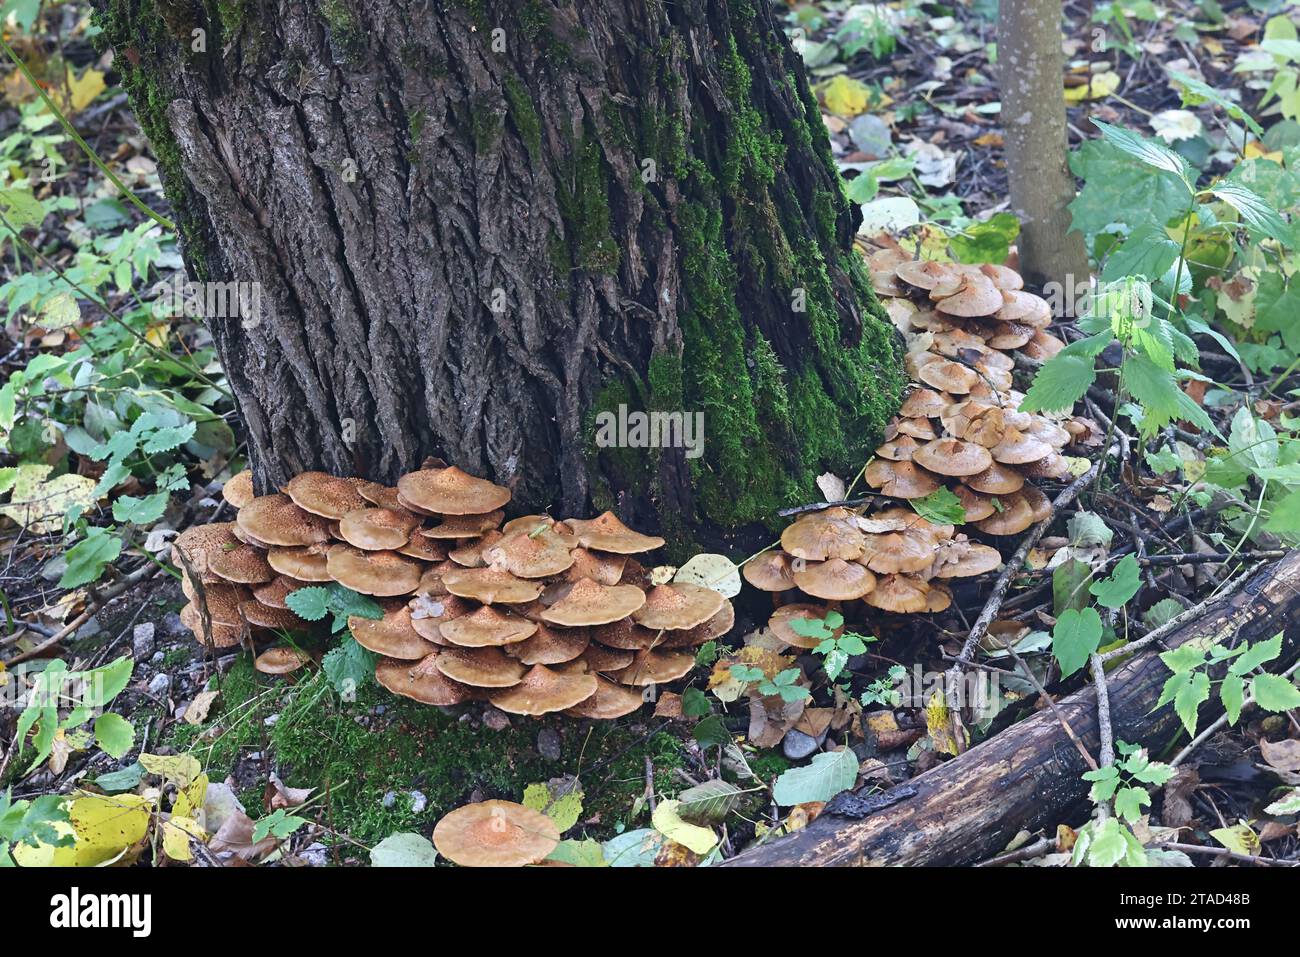 Shaggy scalycap, Pholiota squarrosa, également connu sous le nom de Shaggy Pholiota, ou Pholiota squameux, champignon sauvage de Finlande Banque D'Images